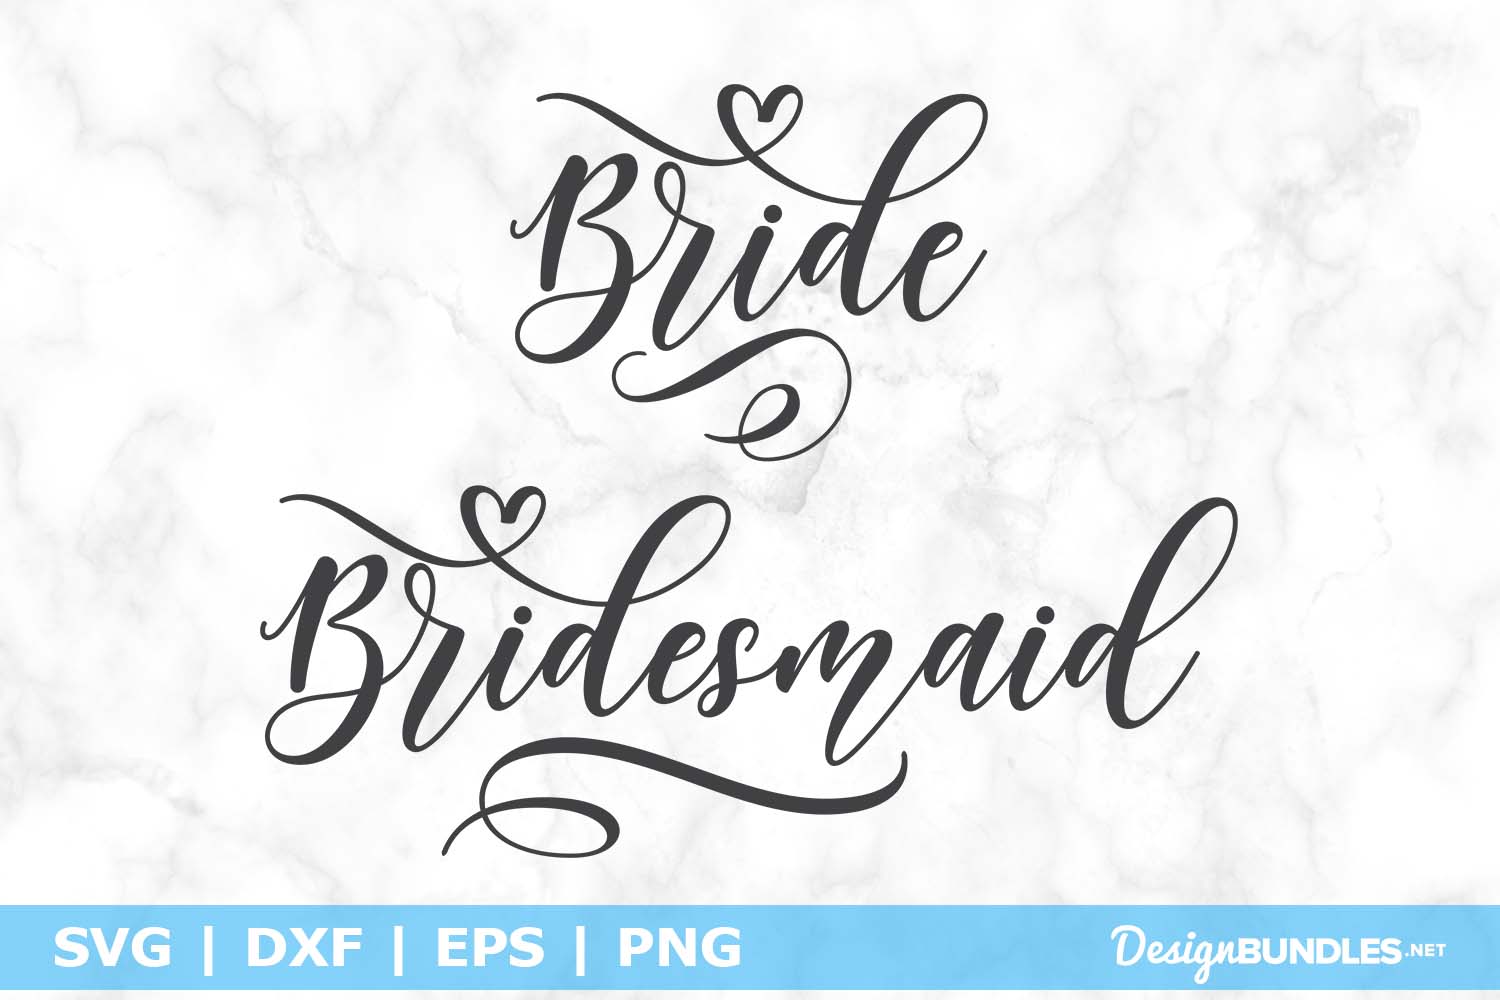 Bride & Bridesmaid SVG File example image 1.